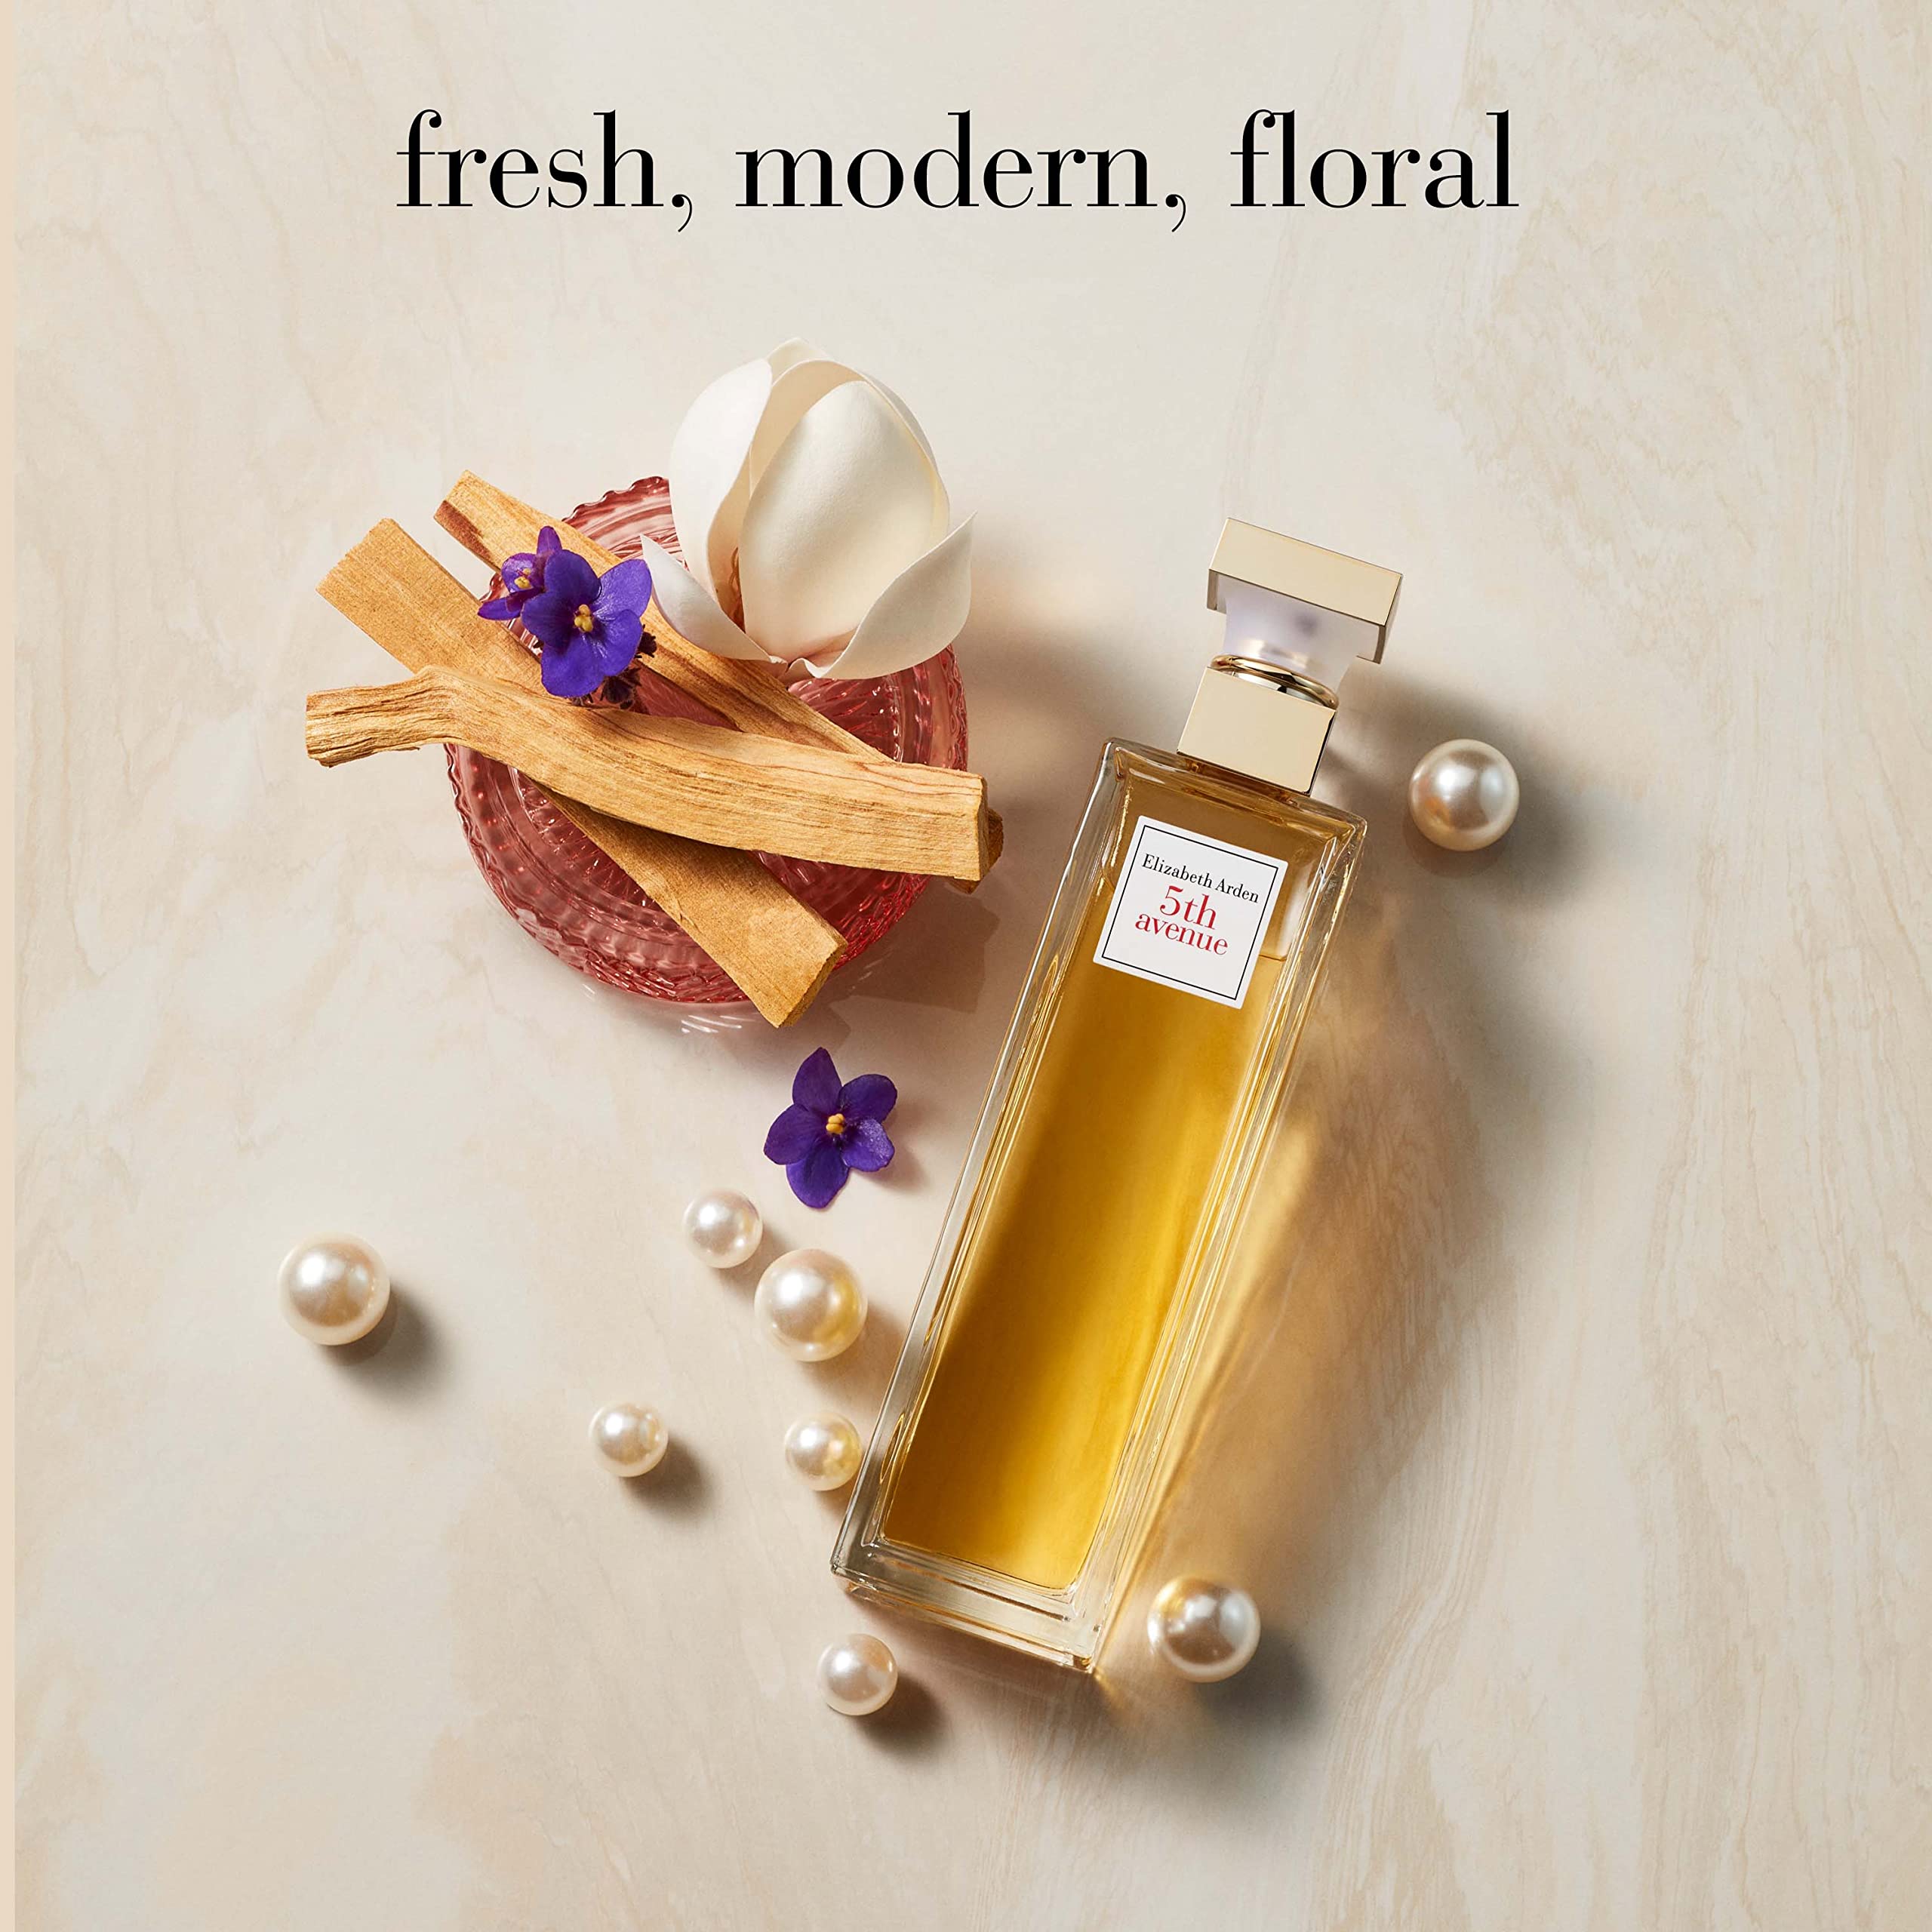 Elizabeth Arden 5th Avenue Perfume for Women, Eau de Parfum, Floral Fragrance, 1 Fluid Ounce